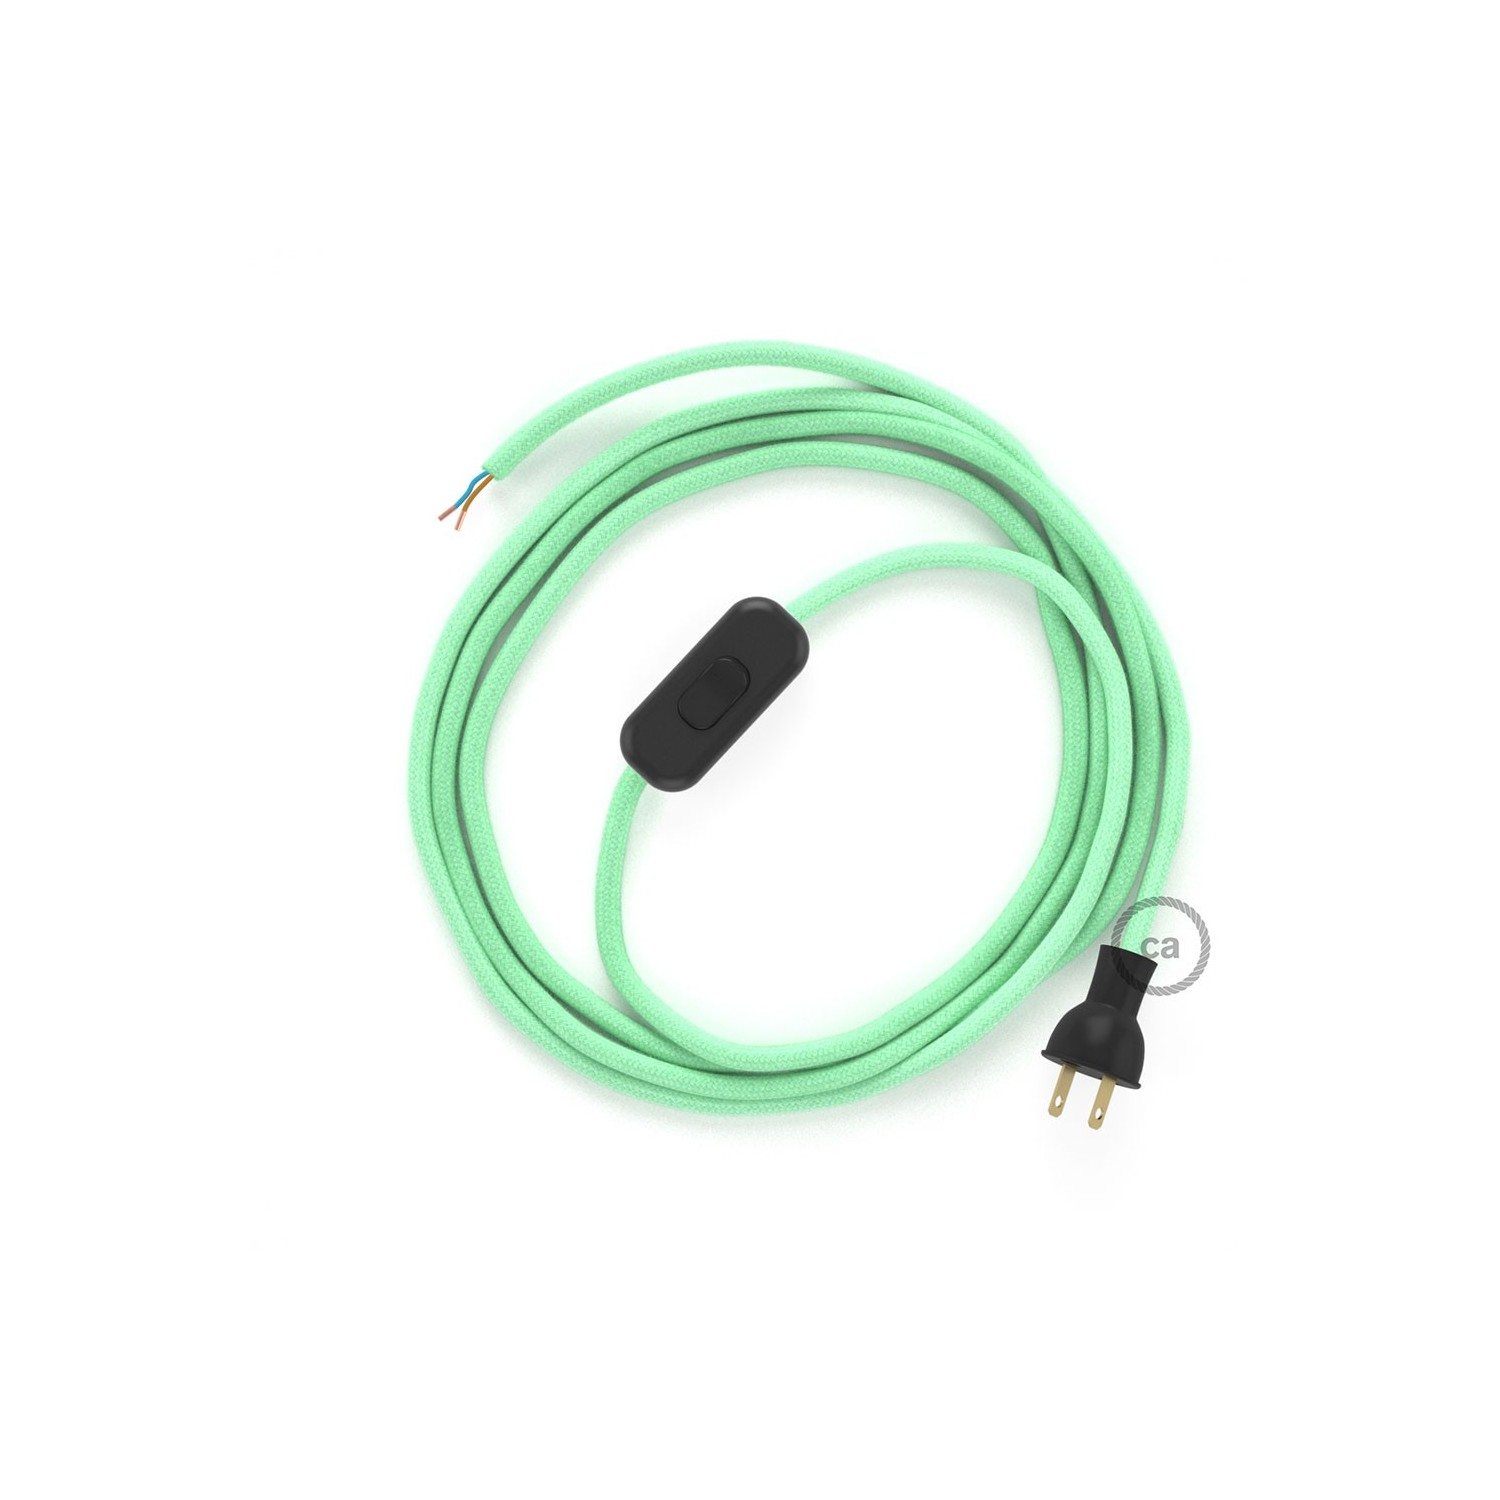 Cableado para lámpara de mesa, cable RC34 Algodón Verde Menta 1,8 m. Elige el color de la clavija y del interruptor!